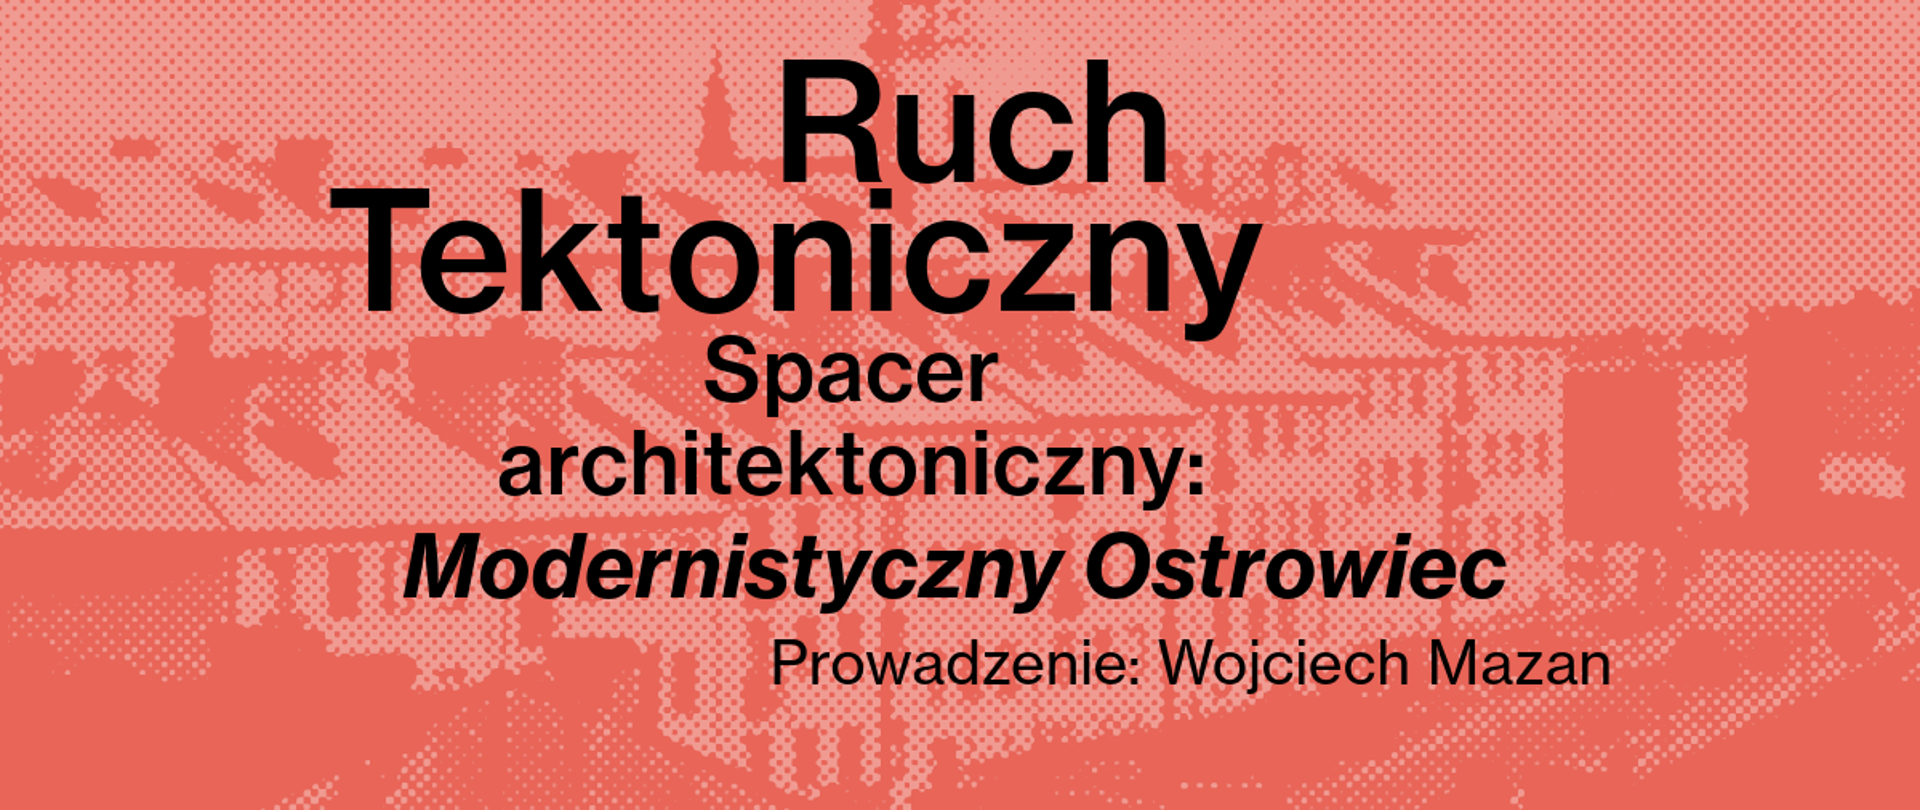 Modernistyczny Ostrowiec - Spacer architektoniczny po mieście